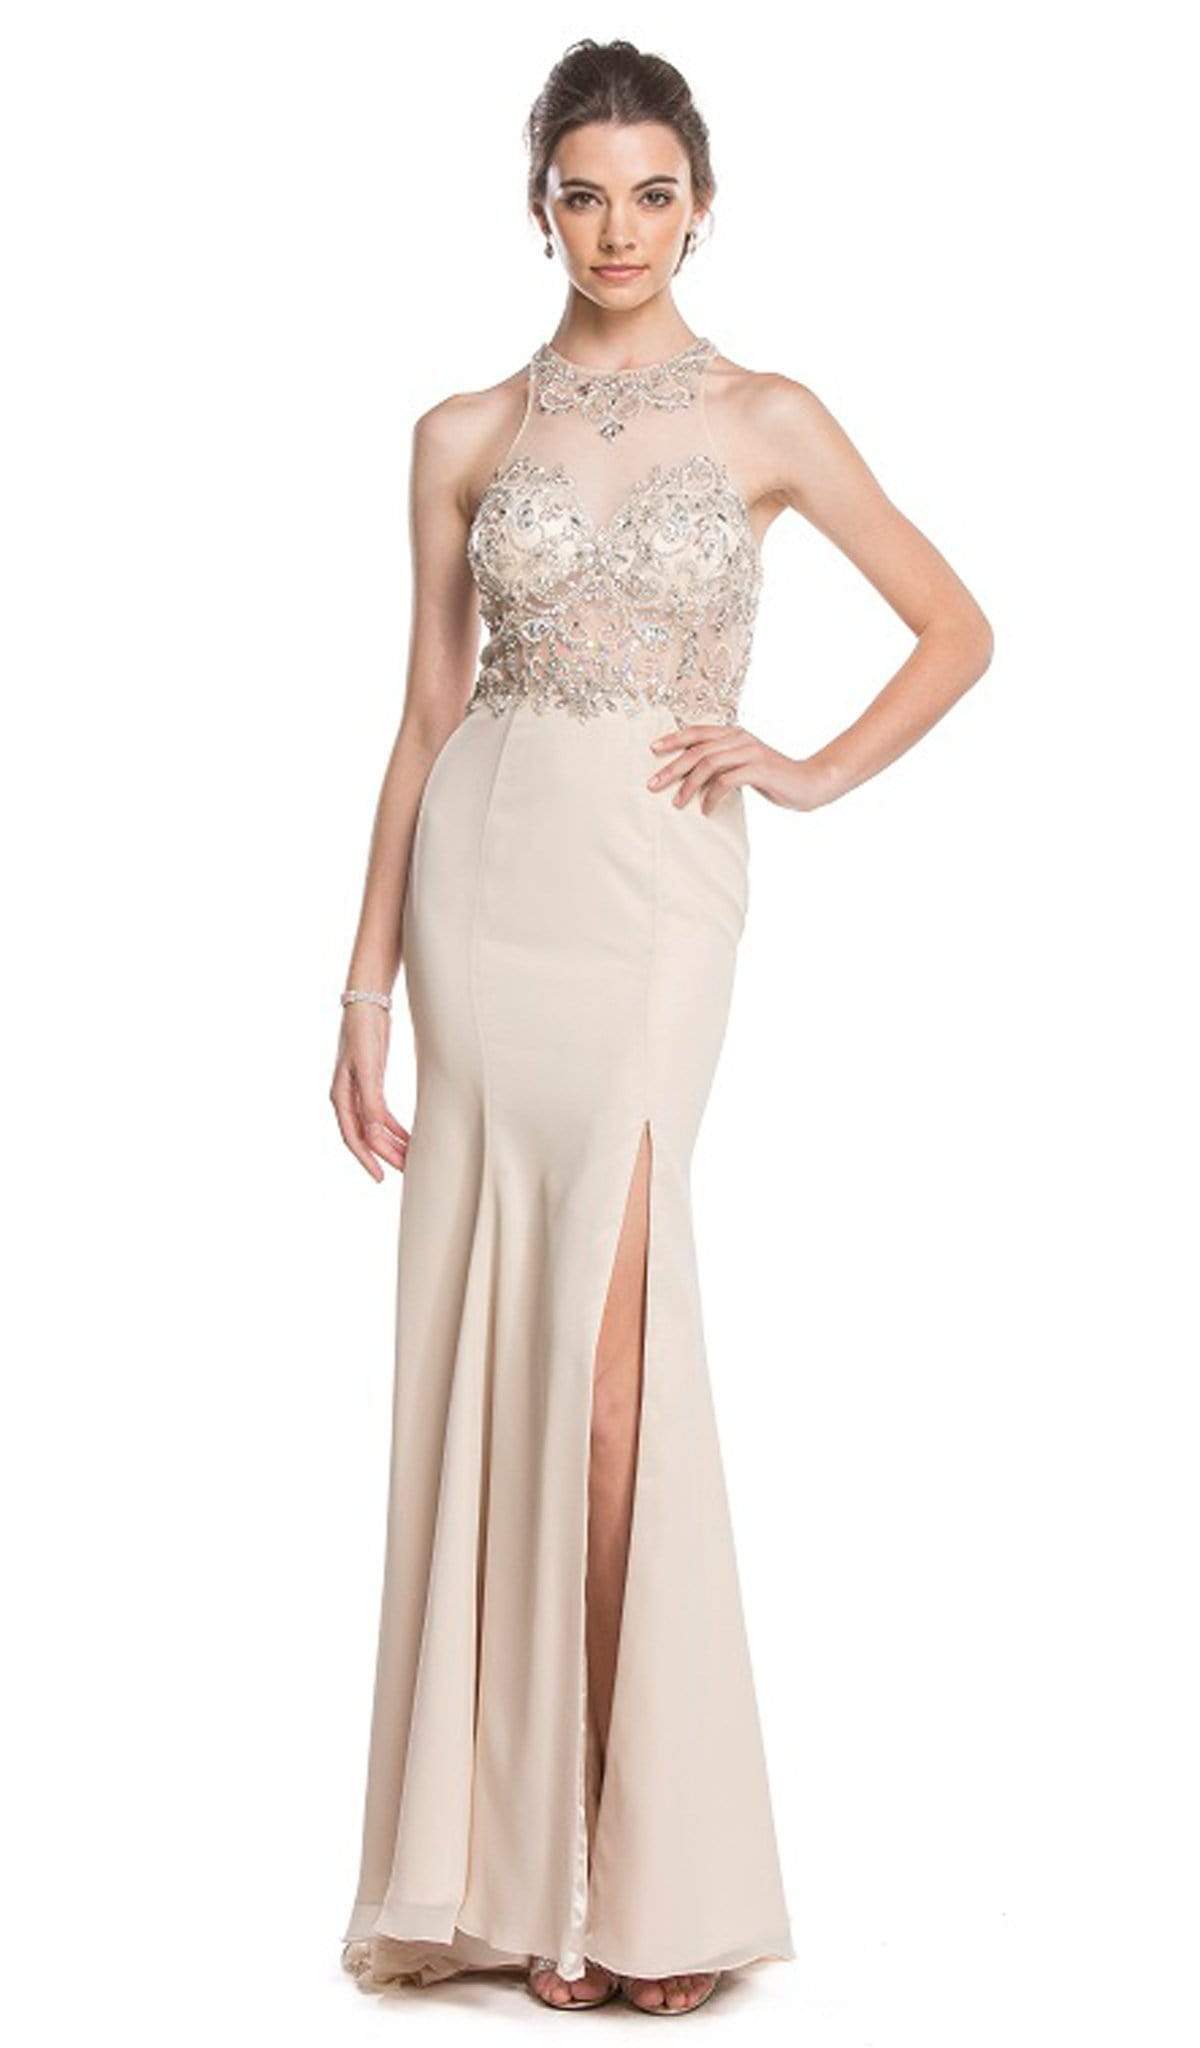 Image of Aspeed Design - Crystal Embellished Evening Dress with Slit